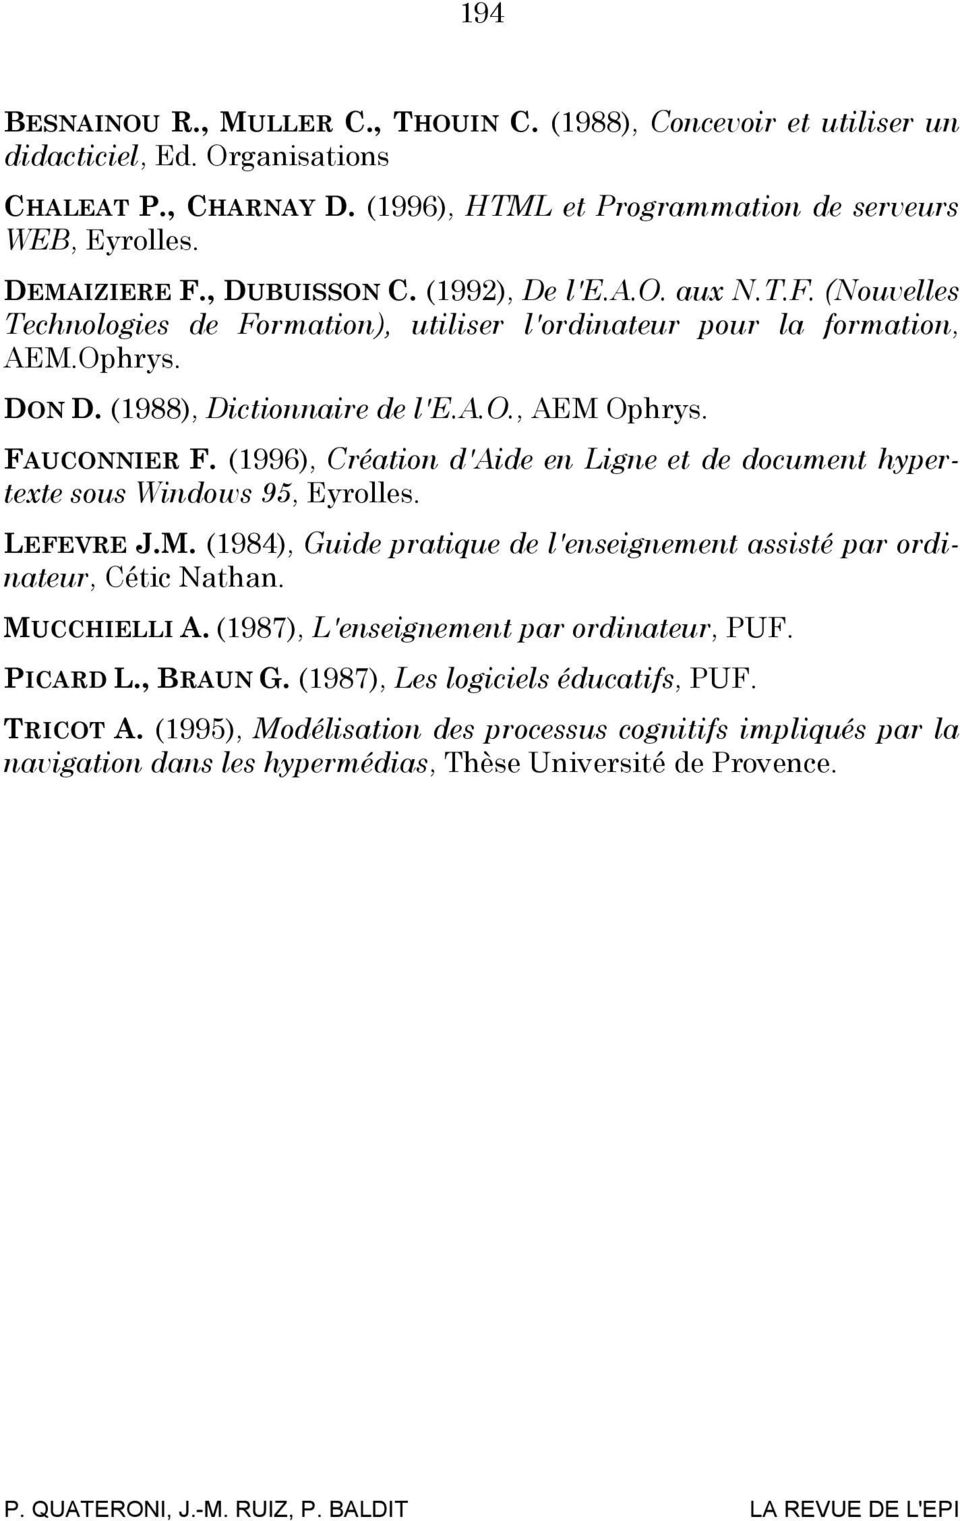 FAUCONNIER F. (1996), Création d'aide en Ligne et de document hypertexte sous Windows 95, Eyrolles. LEFEVRE J.M. (1984), Guide pratique de l'enseignement assisté par ordinateur, Cétic Nathan.